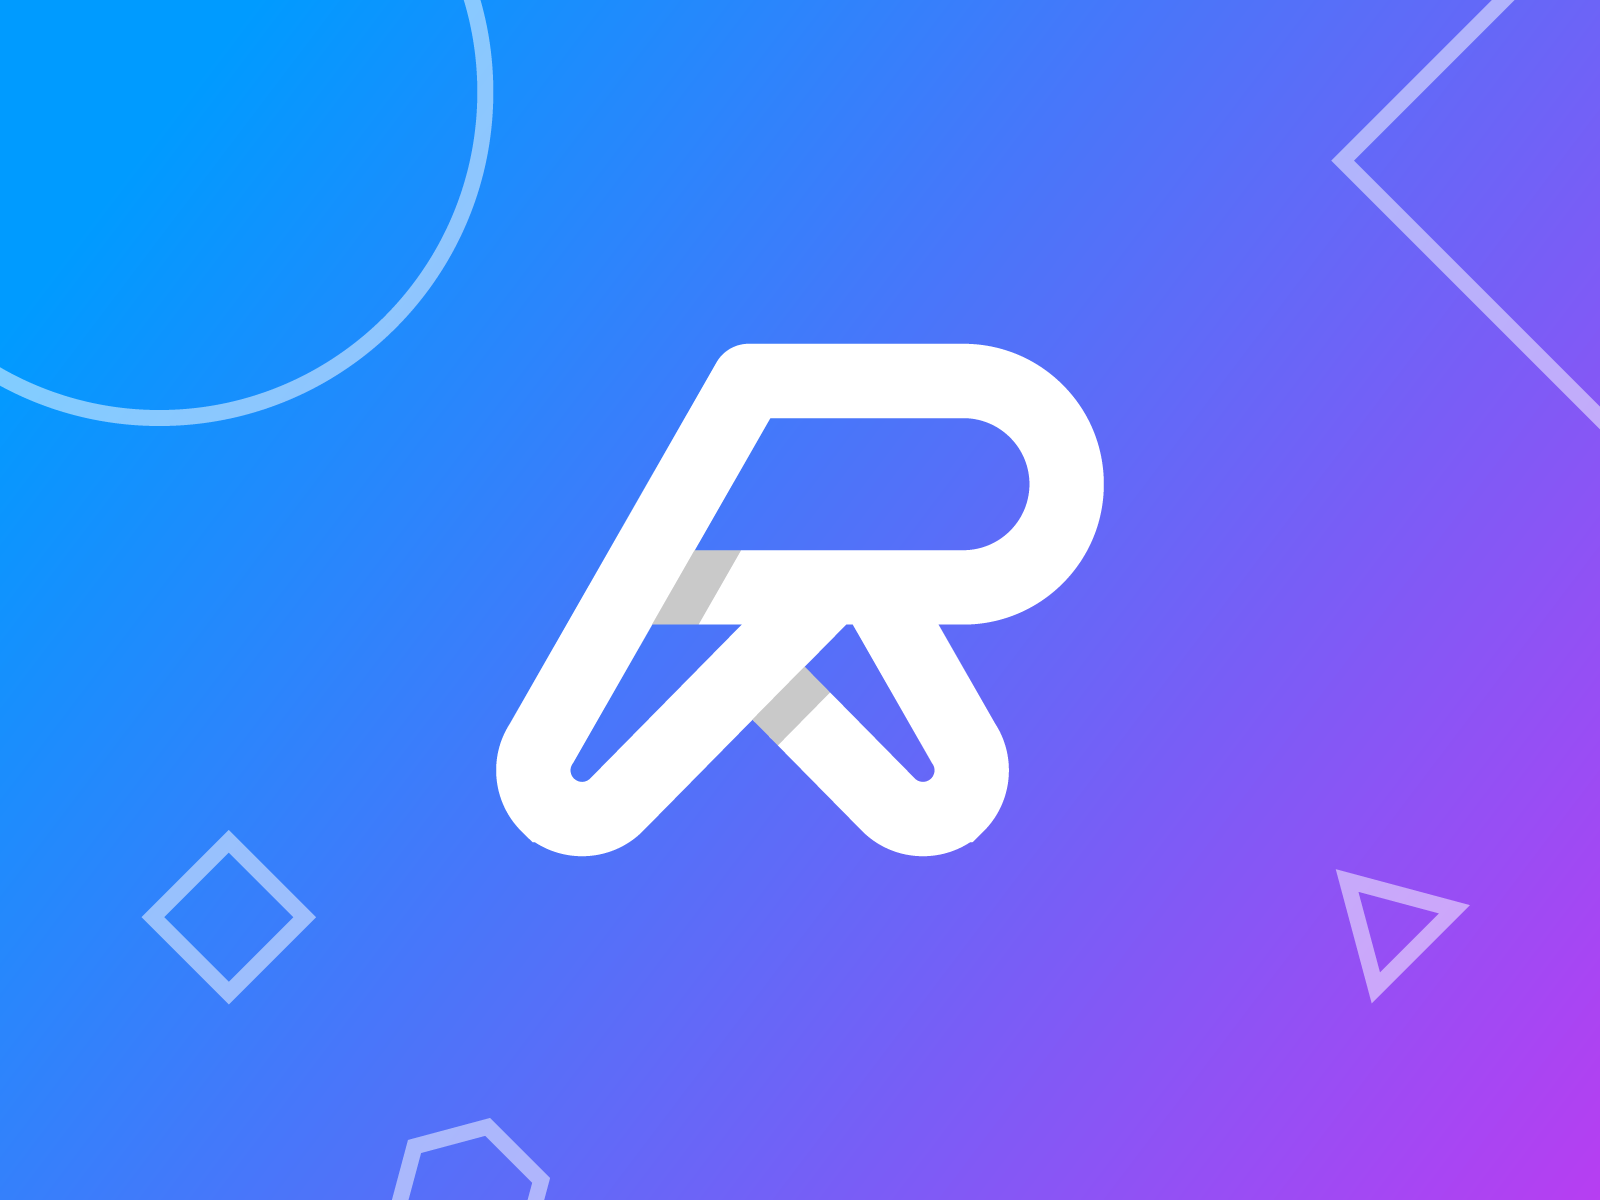 R lettermark logo by Rakibul - logo designer on Dribbble